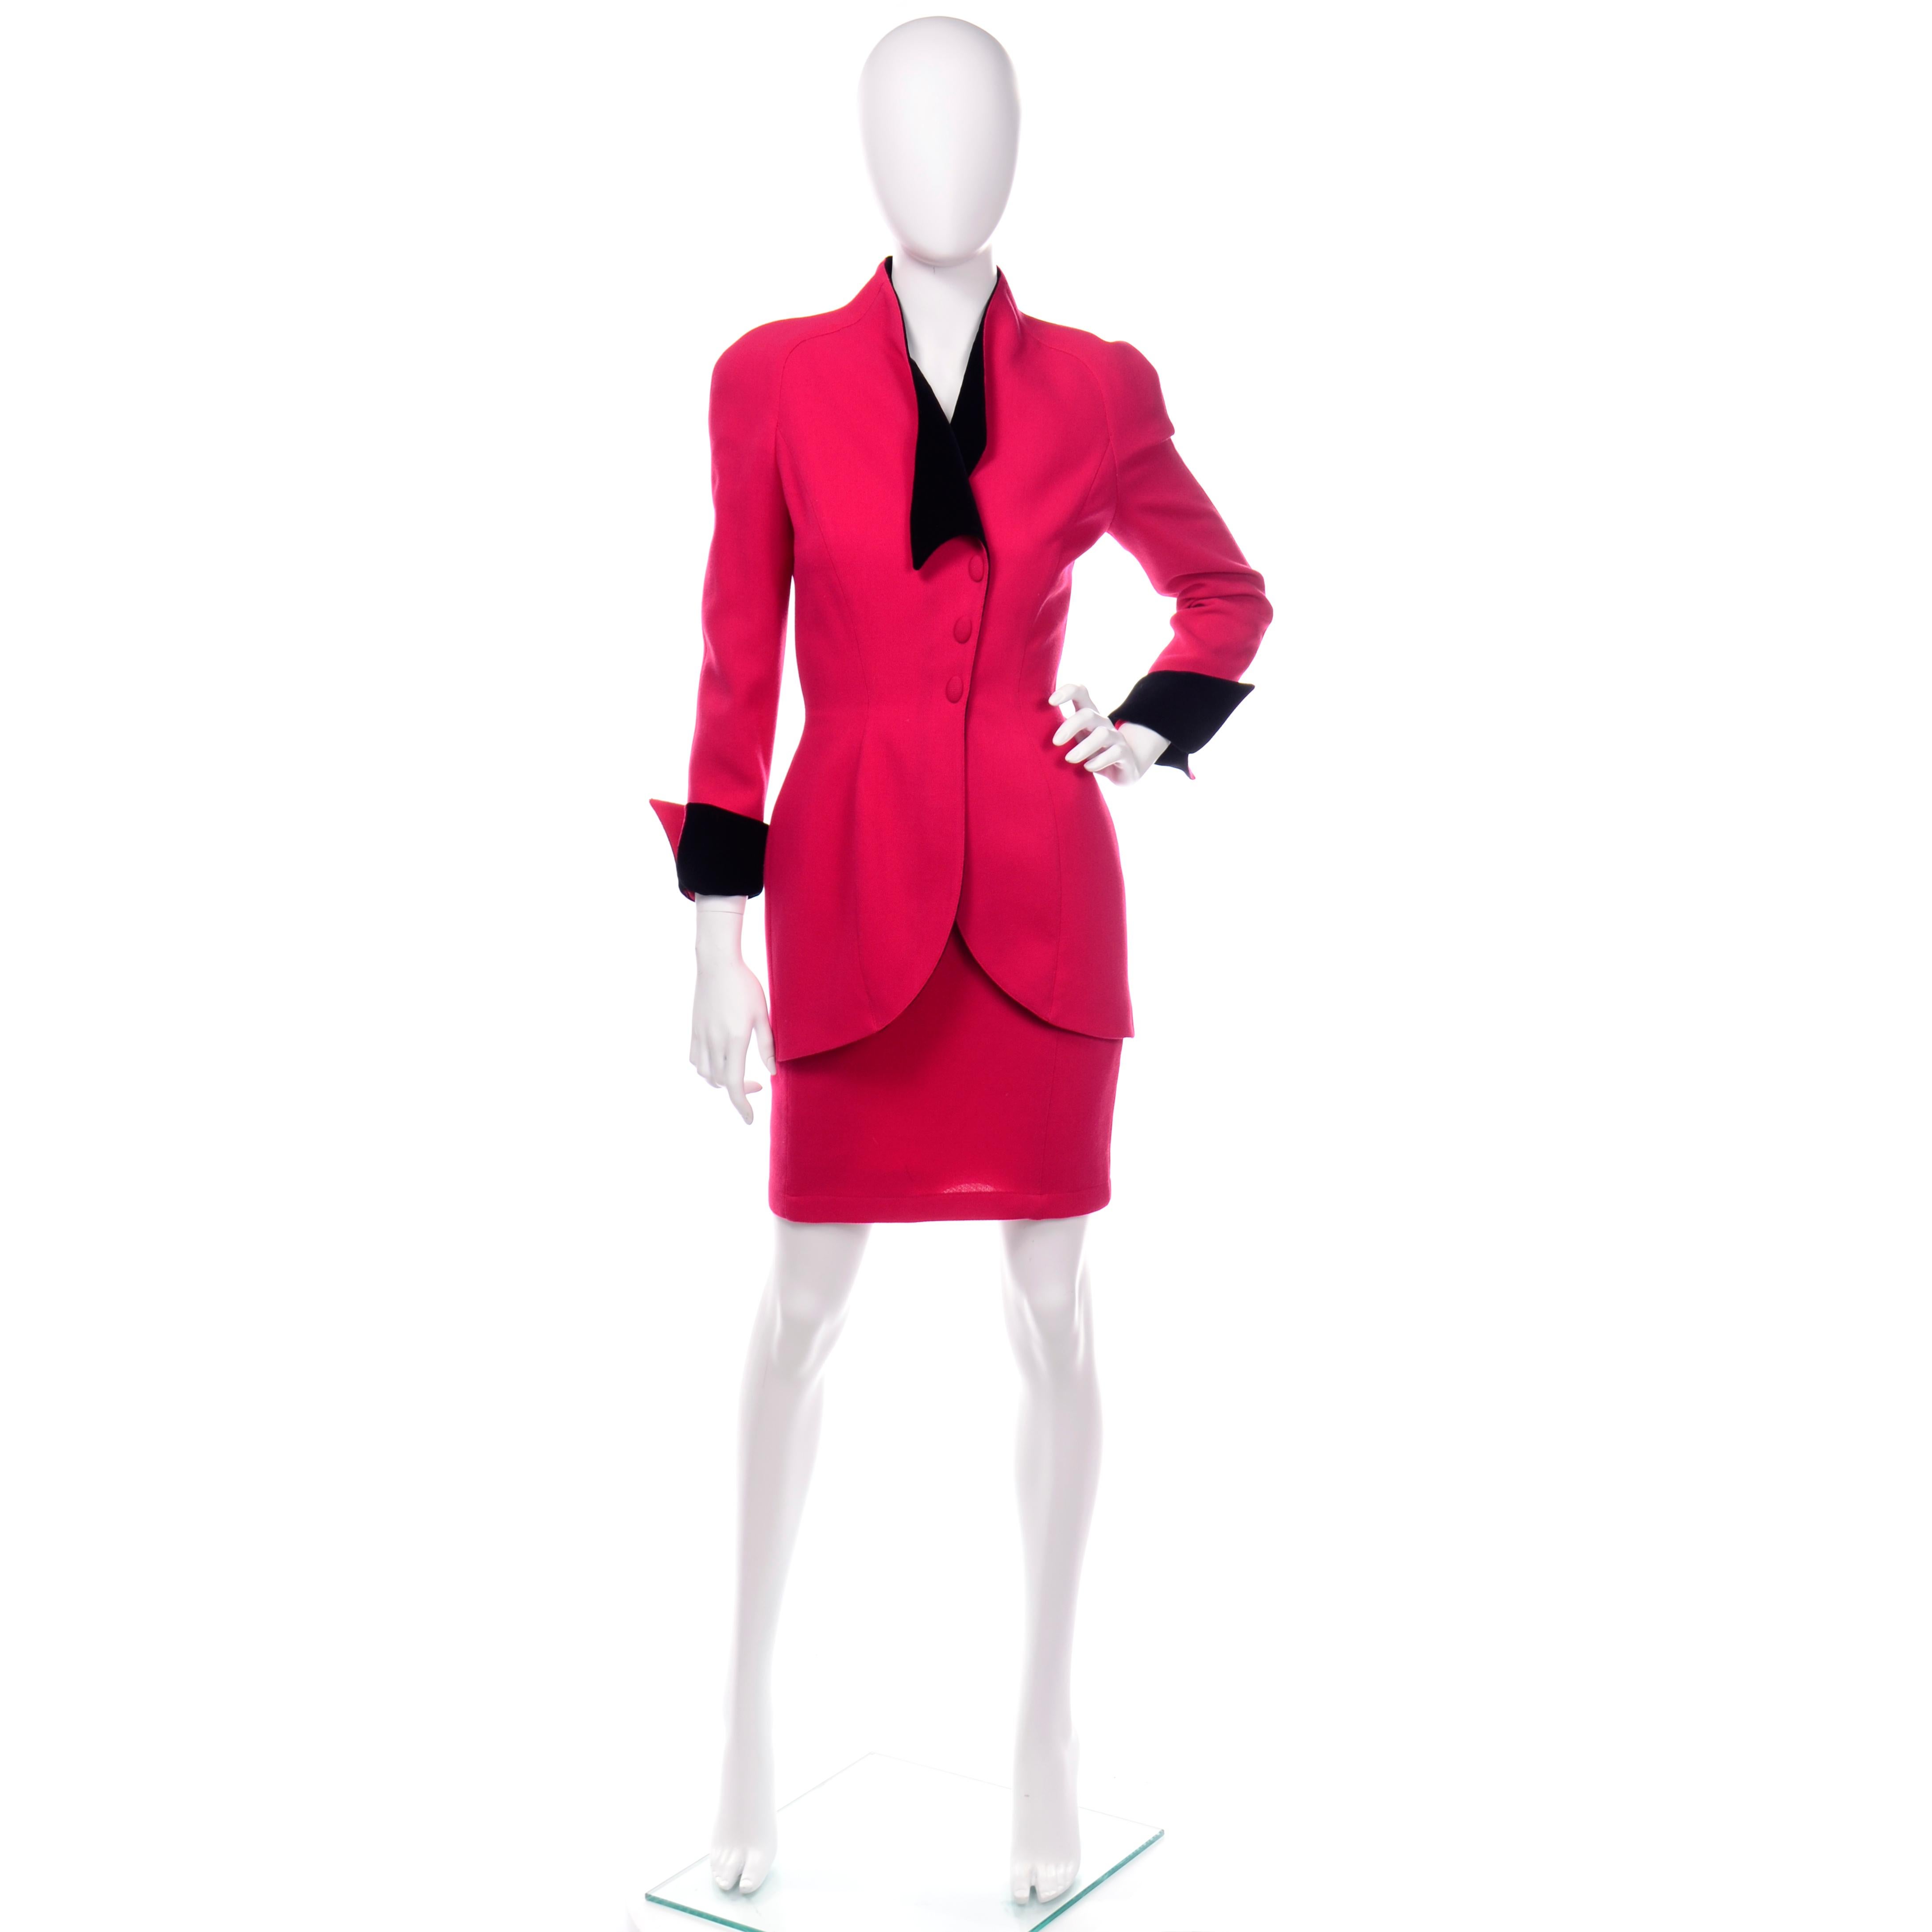 Voici un fabuleux tailleur 2 pièces vintage de Thierry Mugler, composé d'un blazer à taille cintrée et d'une jupe crayon étroite. Le costume est en laine rouge fraise et est doublé de coton. La veste se boutonne sur le devant et possède des poignets